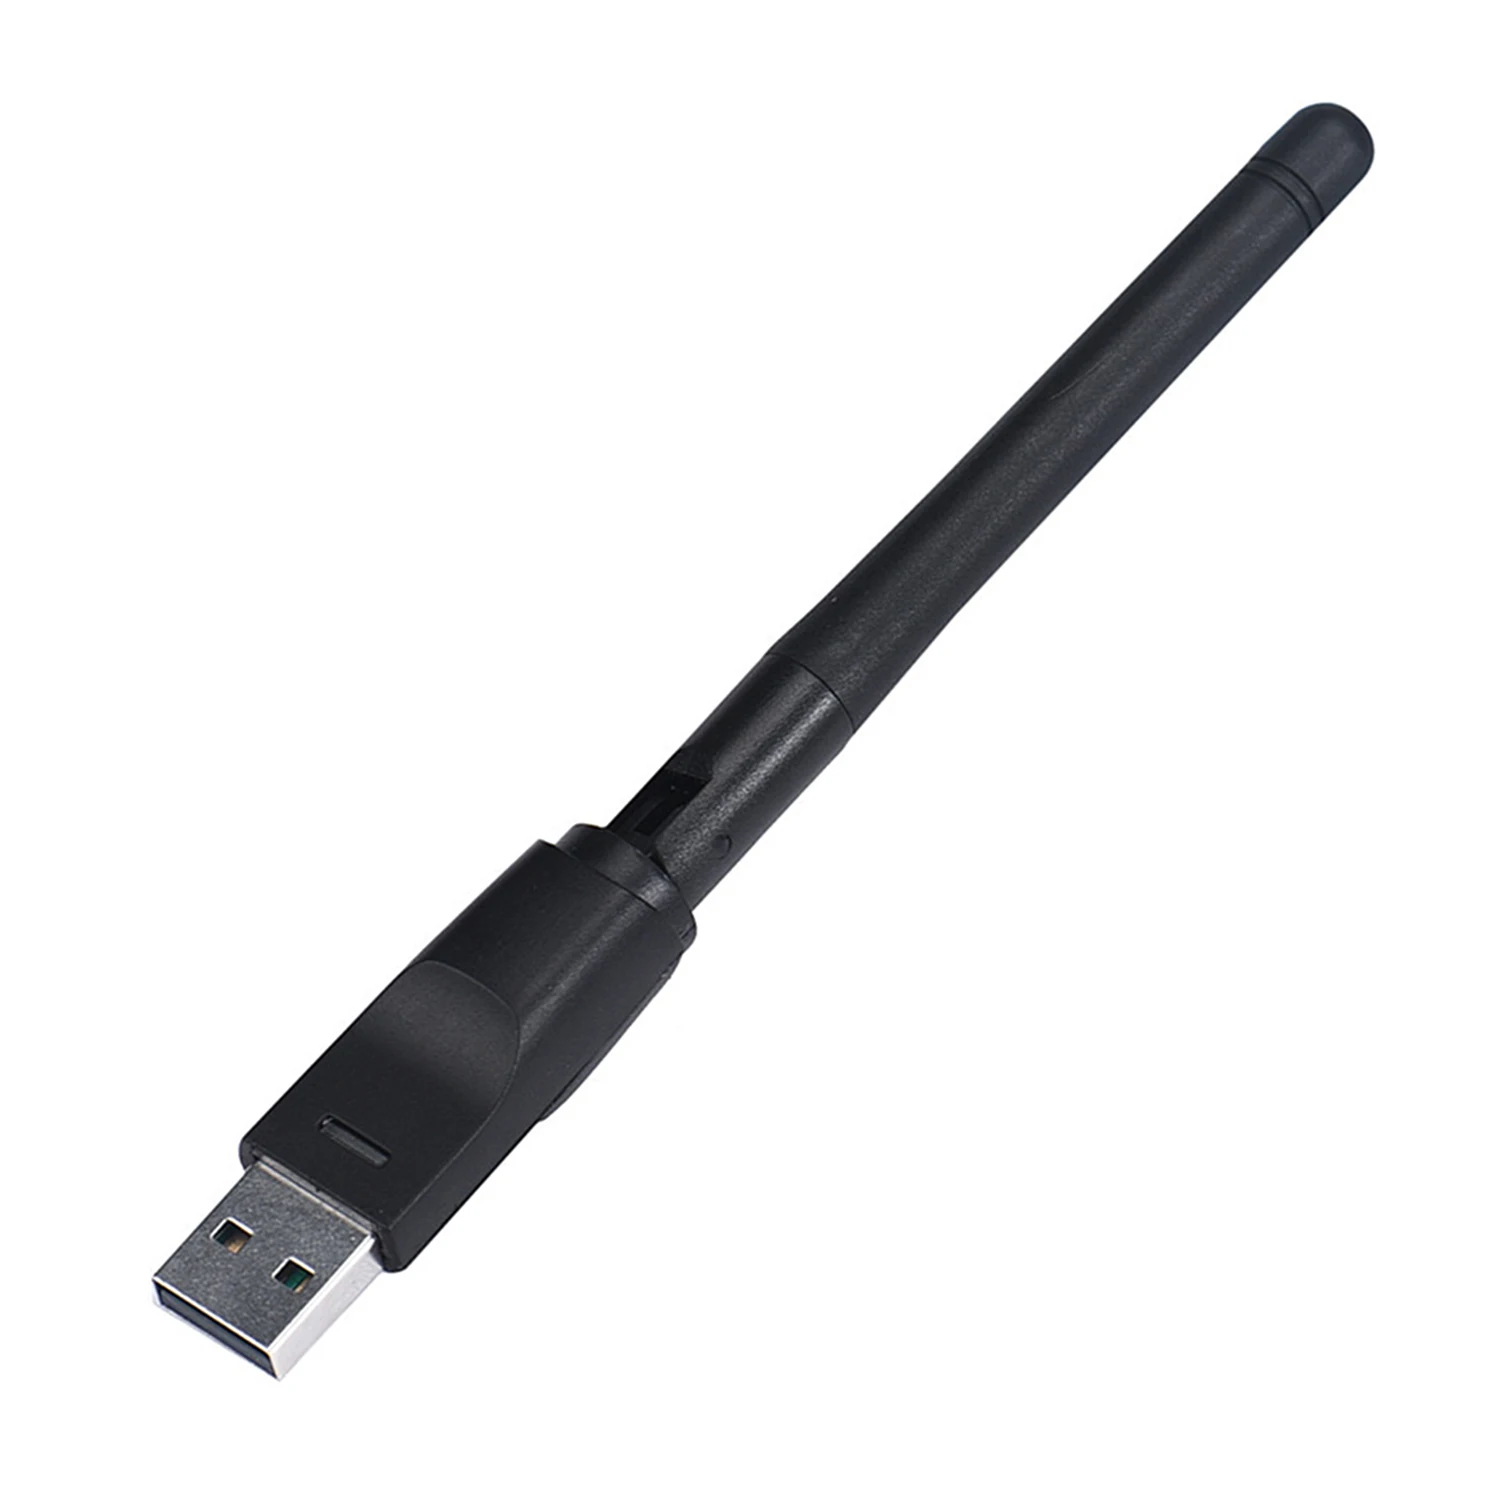 Elisona RT5370 150 Мбит/с 2,4 ГГц USB WI-FI адаптер Вращающийся WLAN Беспроводной сетевой карты Антенна Wi-Fi Dongle Придерживайтесь разъем для ПК